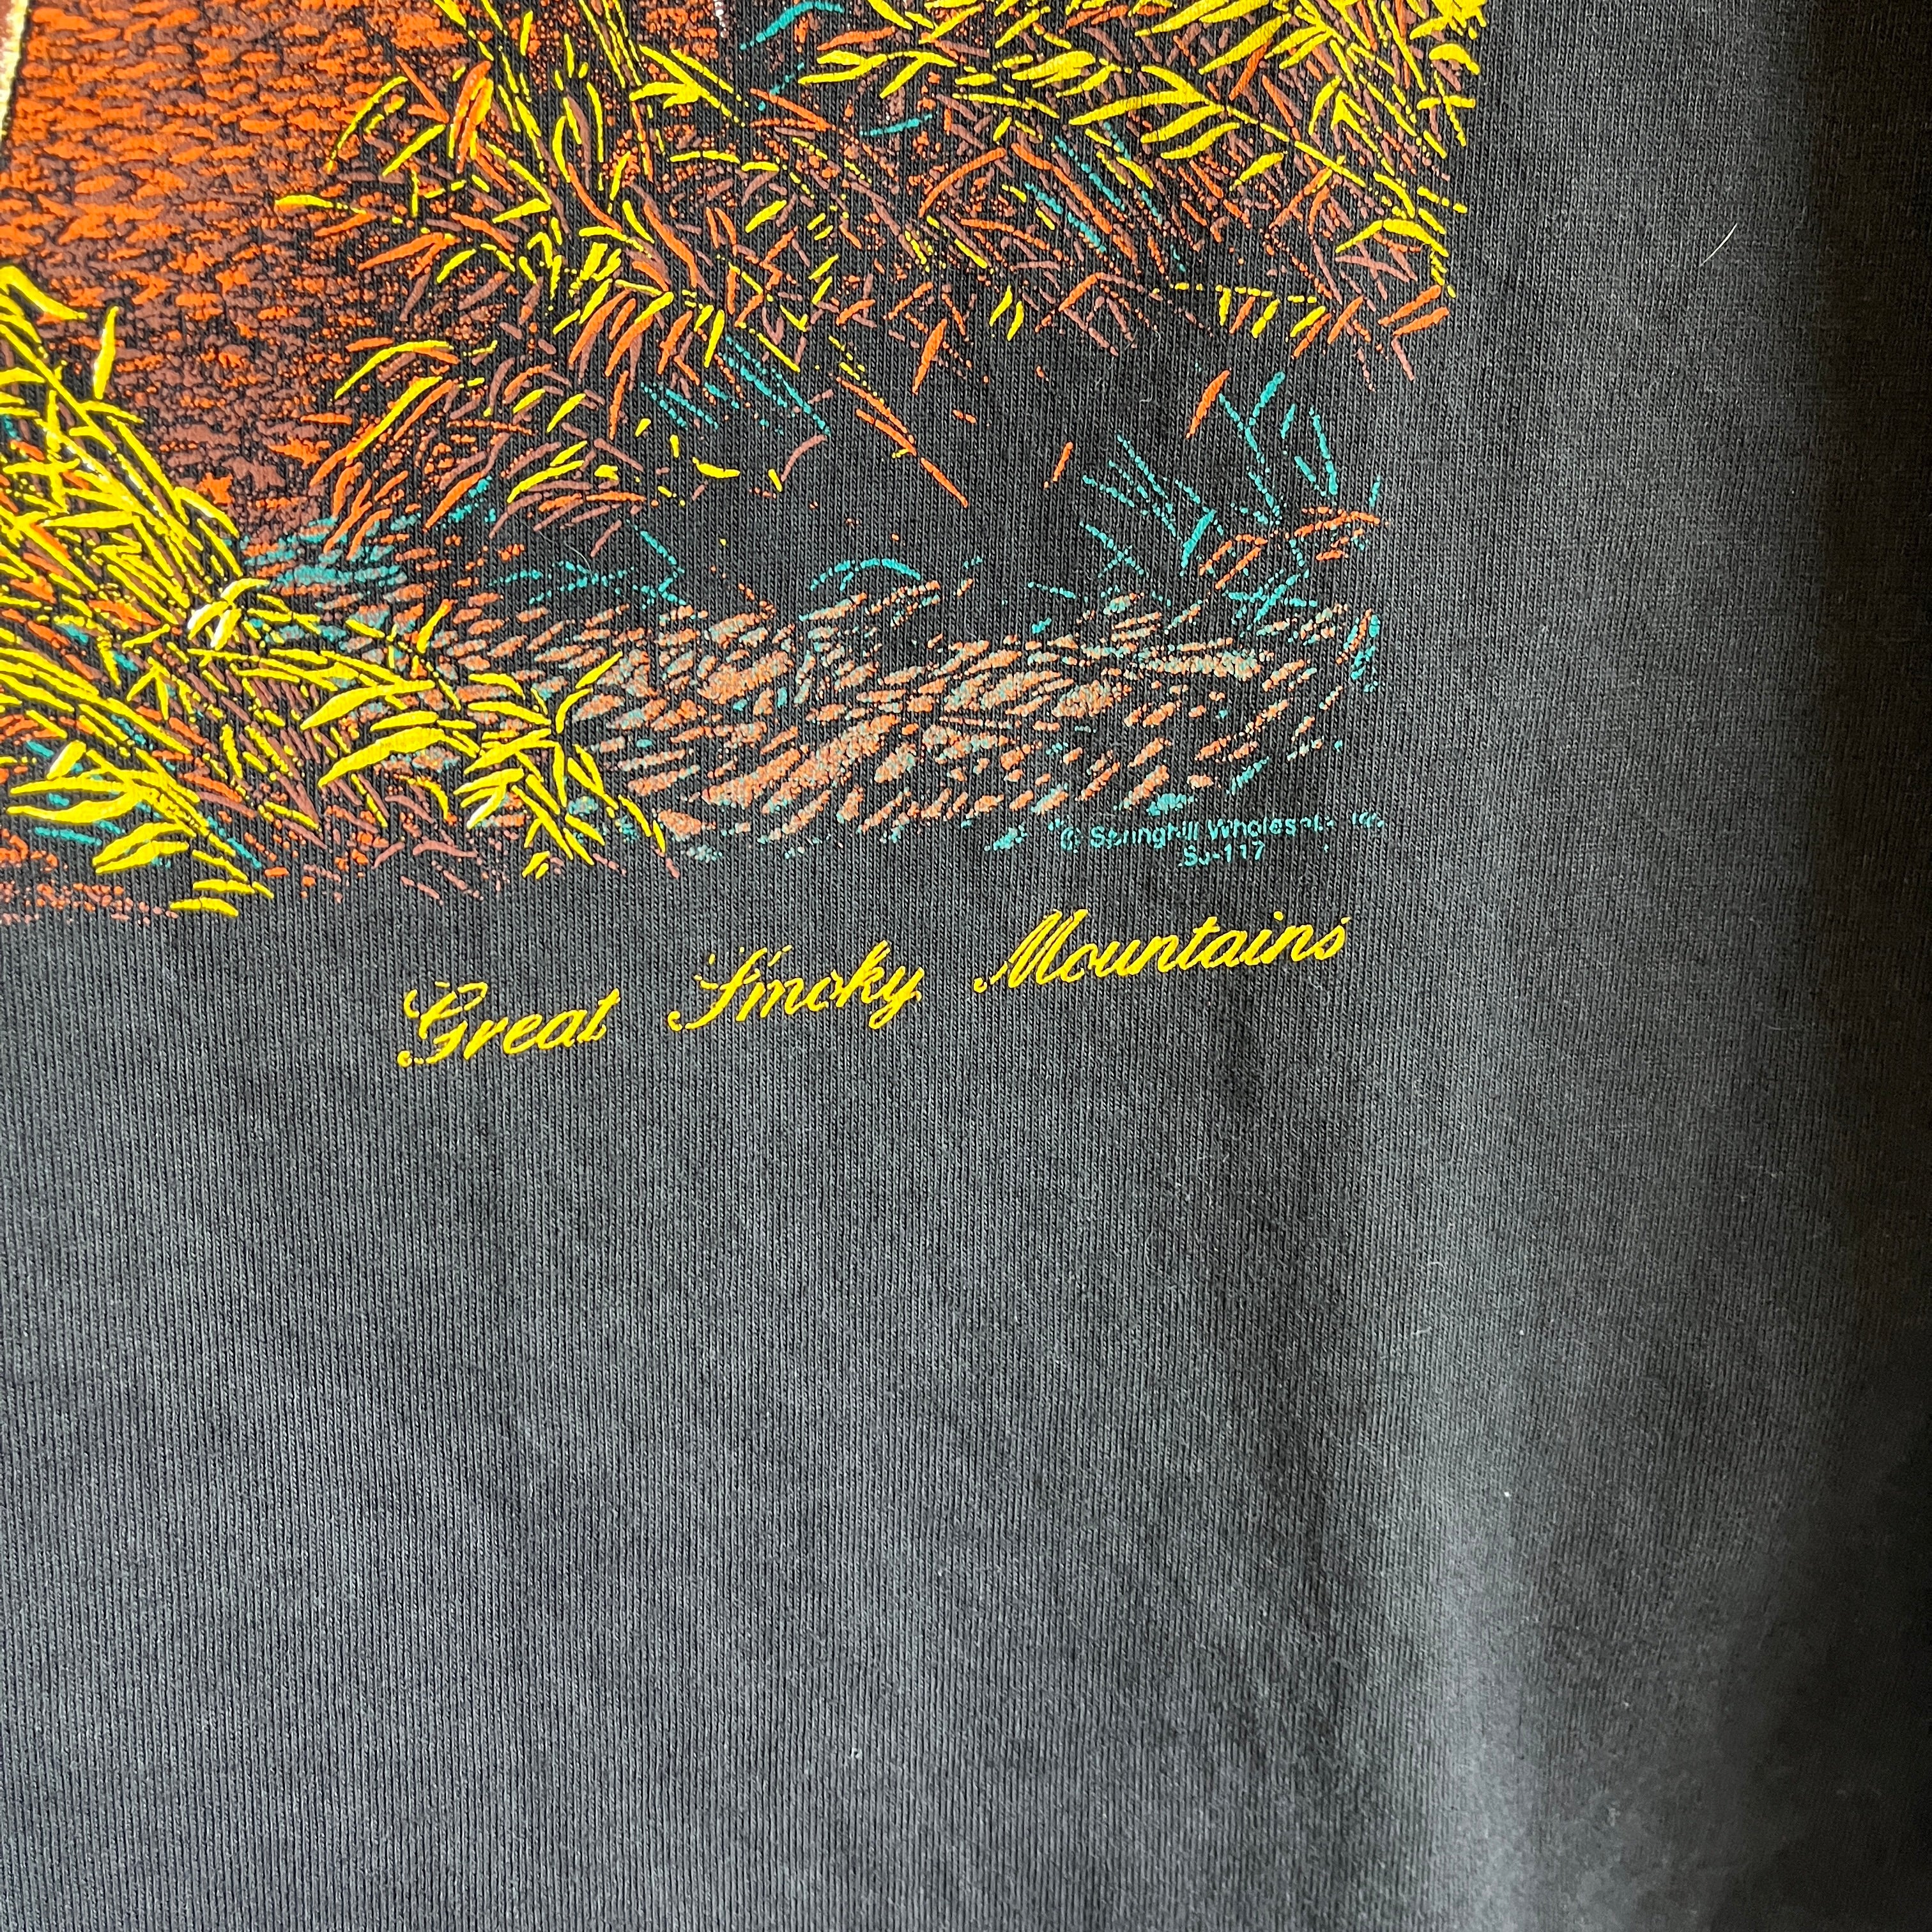 T-shirt à peine porté des années 1990 Smokey Mountains